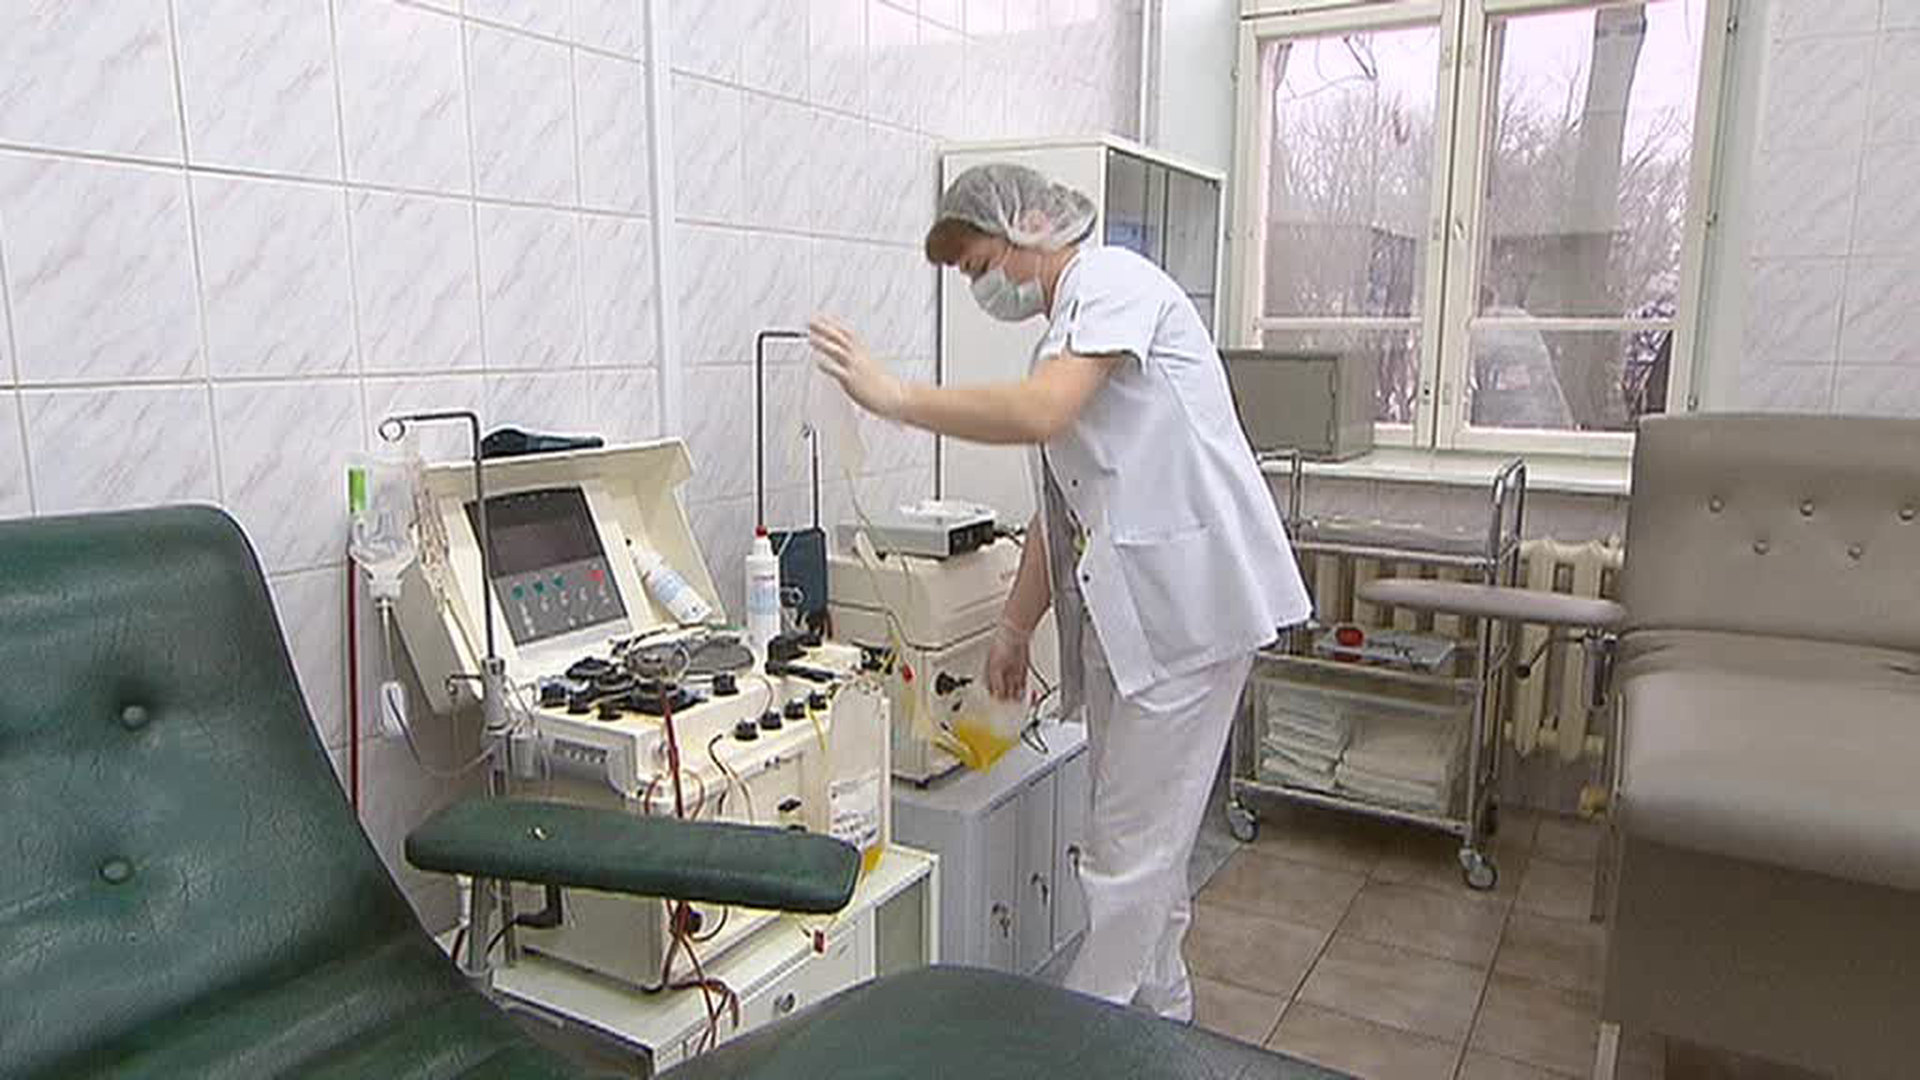 Сайт поликлиники 10 иркутска. Больница 10 Иркутск. Доктор борется с раковой опухолью фото.